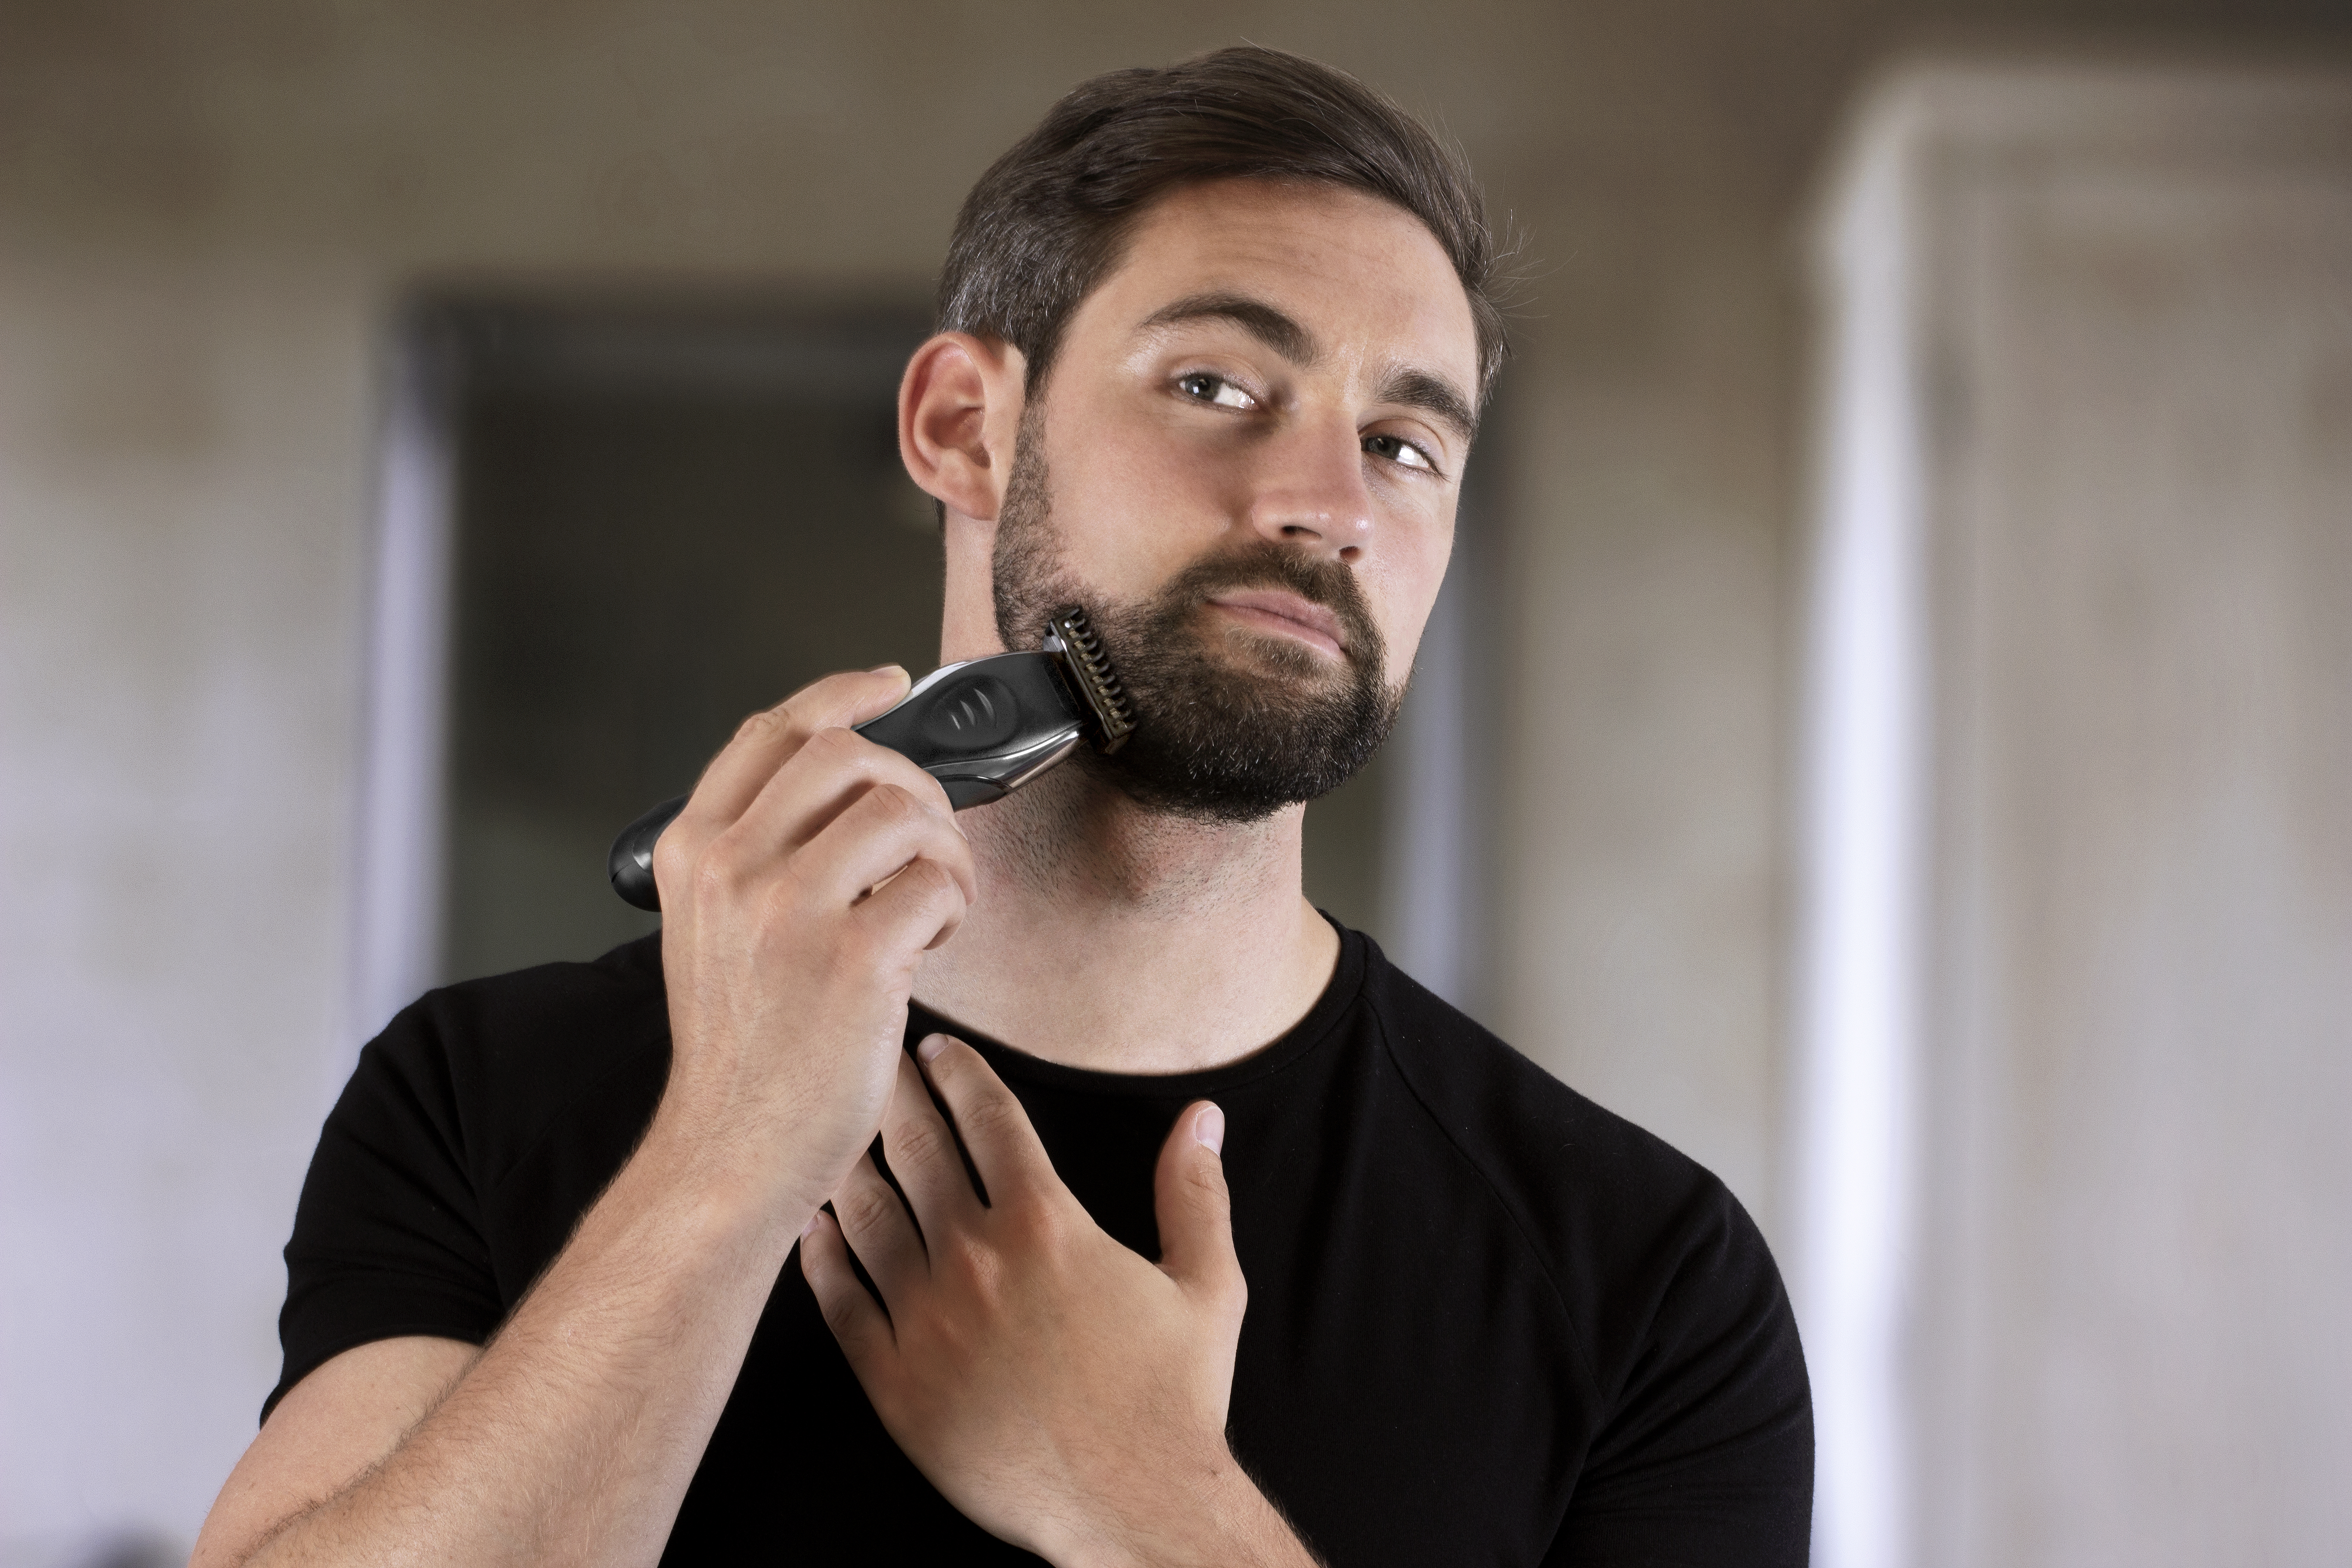 3mm beard trimmer